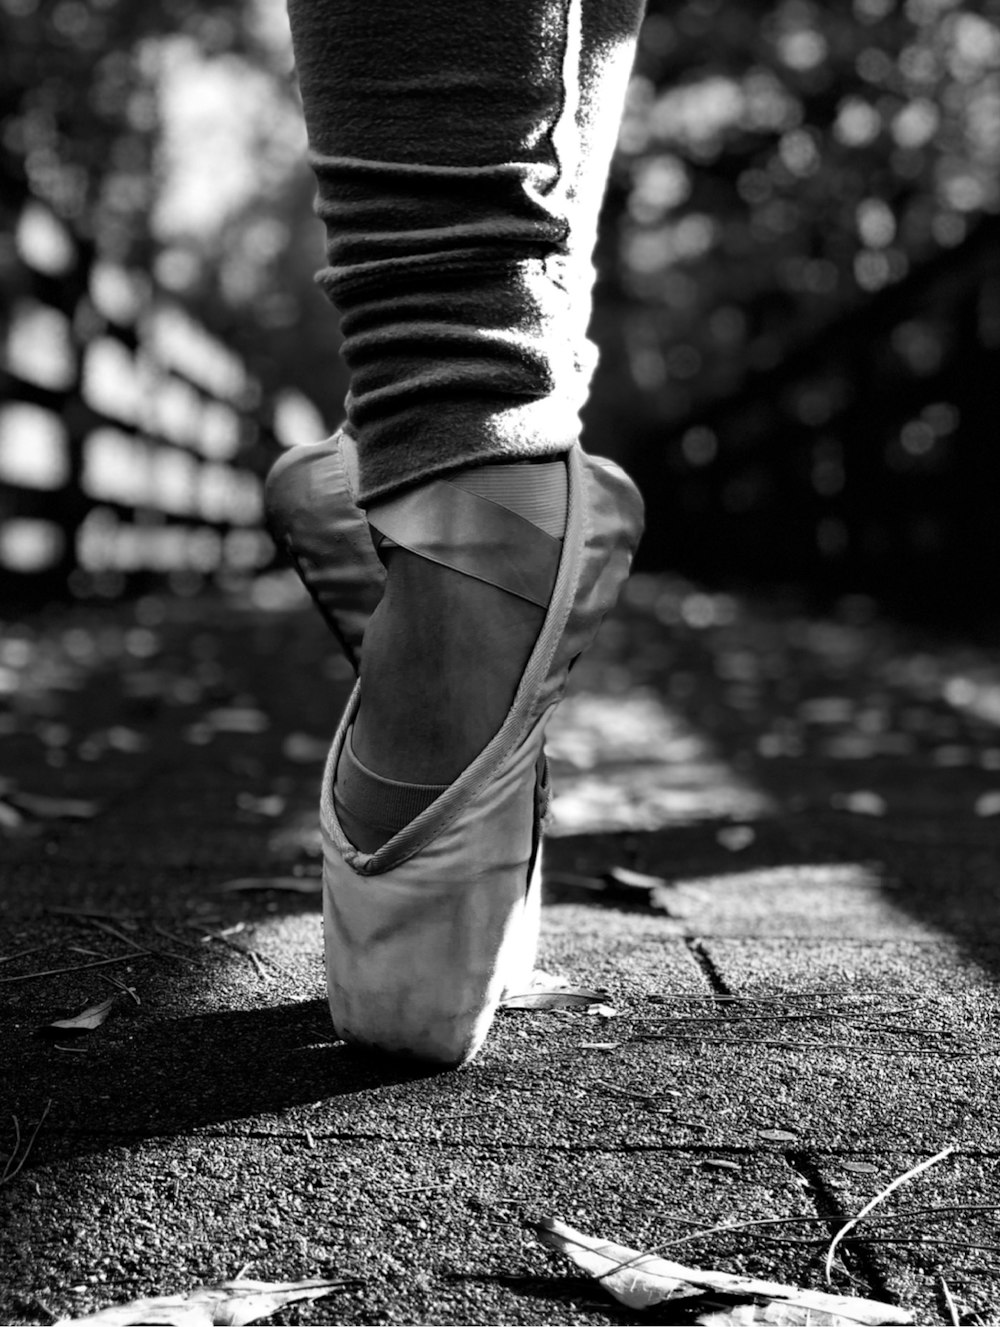 uma foto em preto e branco de uma pessoa usando sapatos de balé